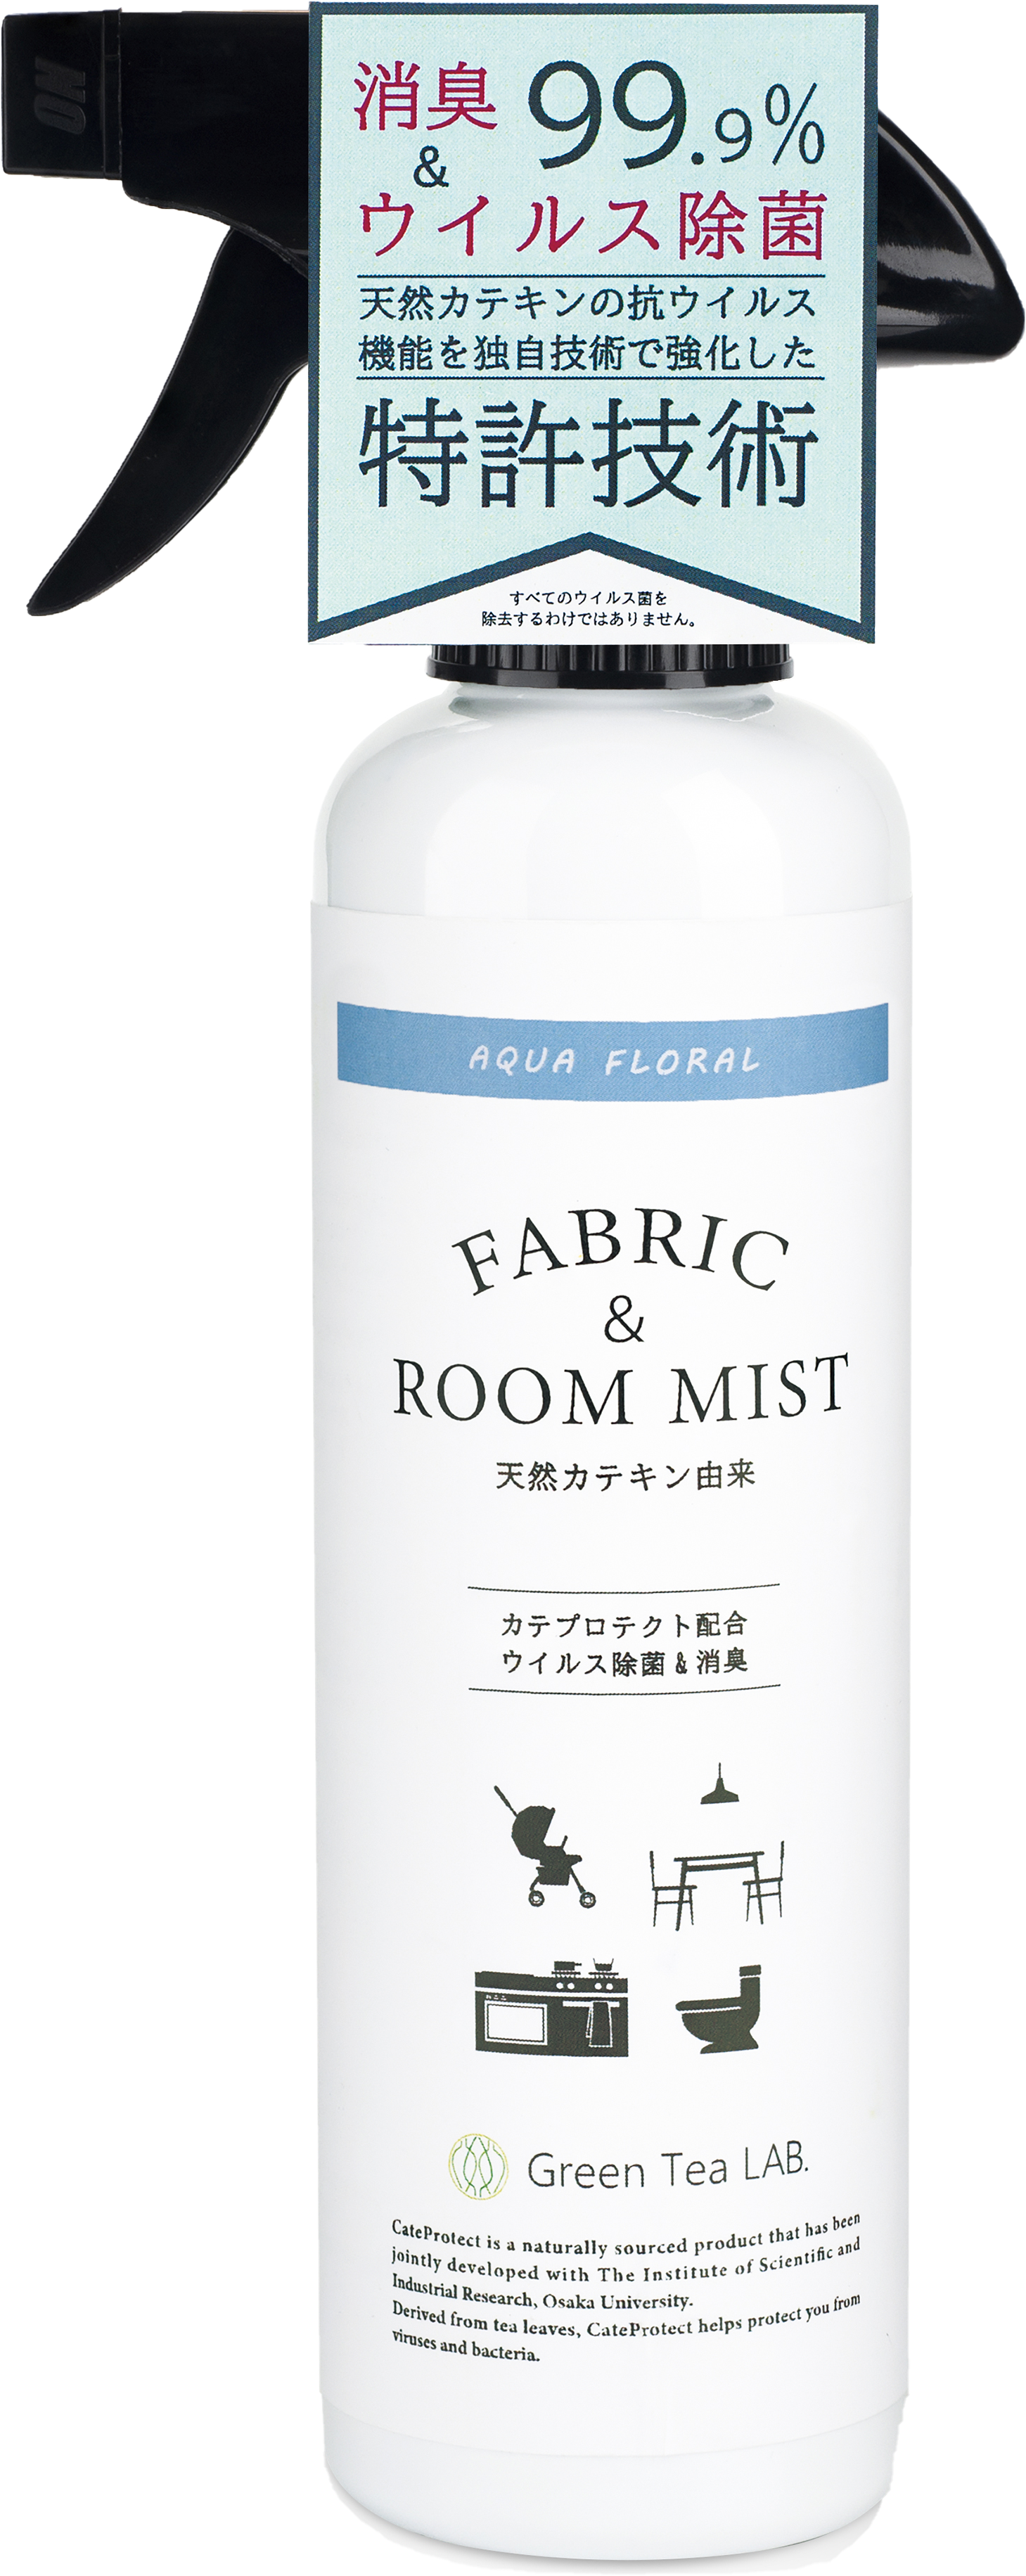 Green Tea LAB | FABRIC & ROOM MIST | Anti-bacterial/Anti-virus Deodorant FABRIC & ROOM MIST